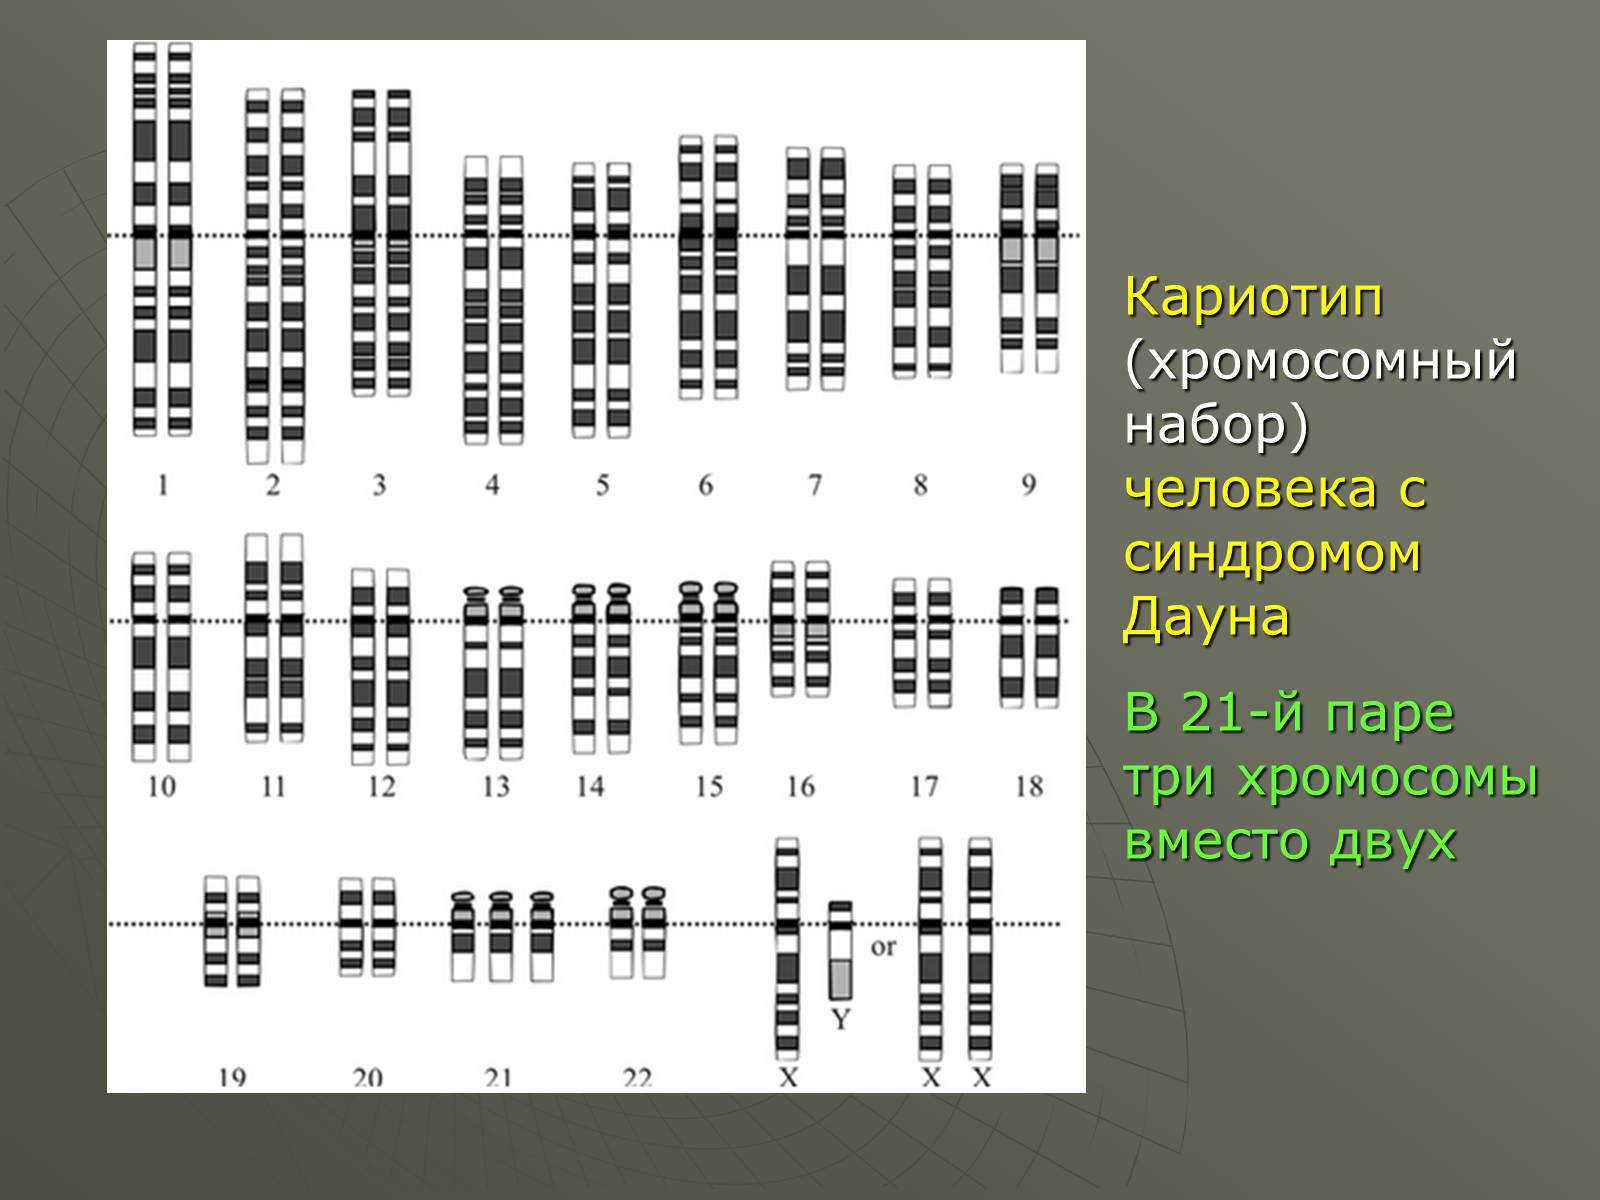 Хромосомные заболевания дауна. Кариотип человека с синдромом Дауна. Хромосомный набор кариотип человека. Набор хромосом при синдроме Дауна. Кариотип человека при синдроме Дауна.